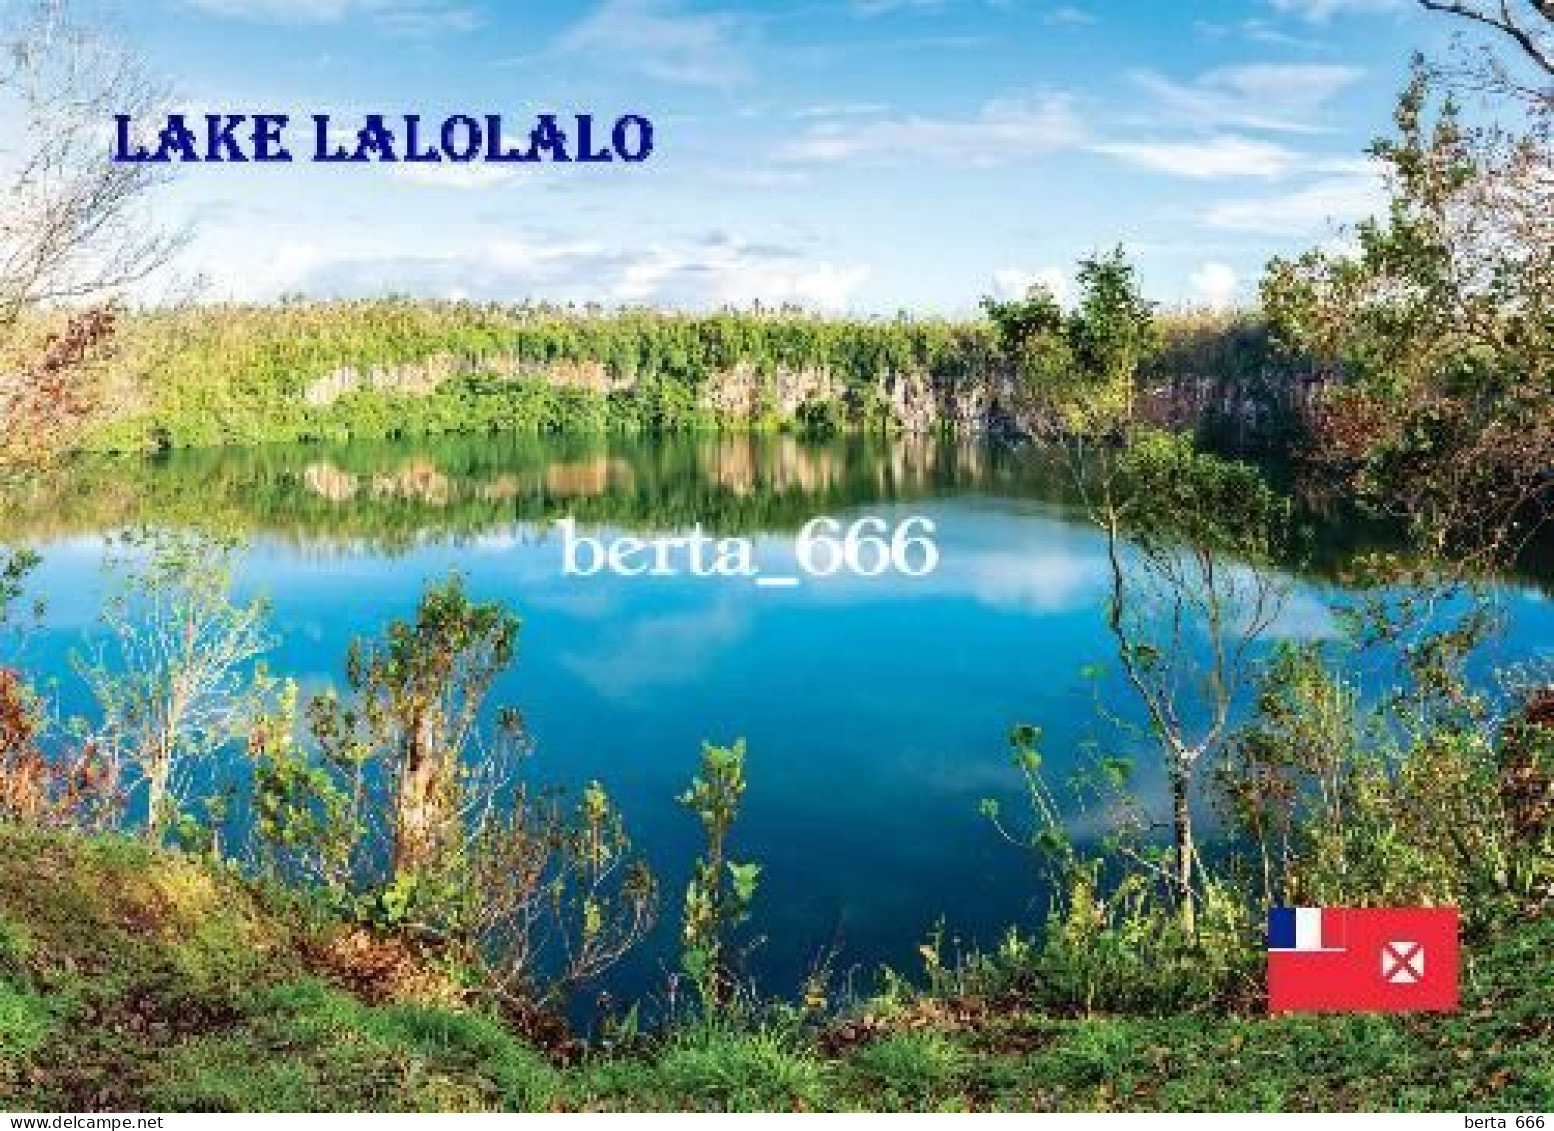 Wallis And Futuna Lake Lalolalo New Postcard - Wallis En Futuna